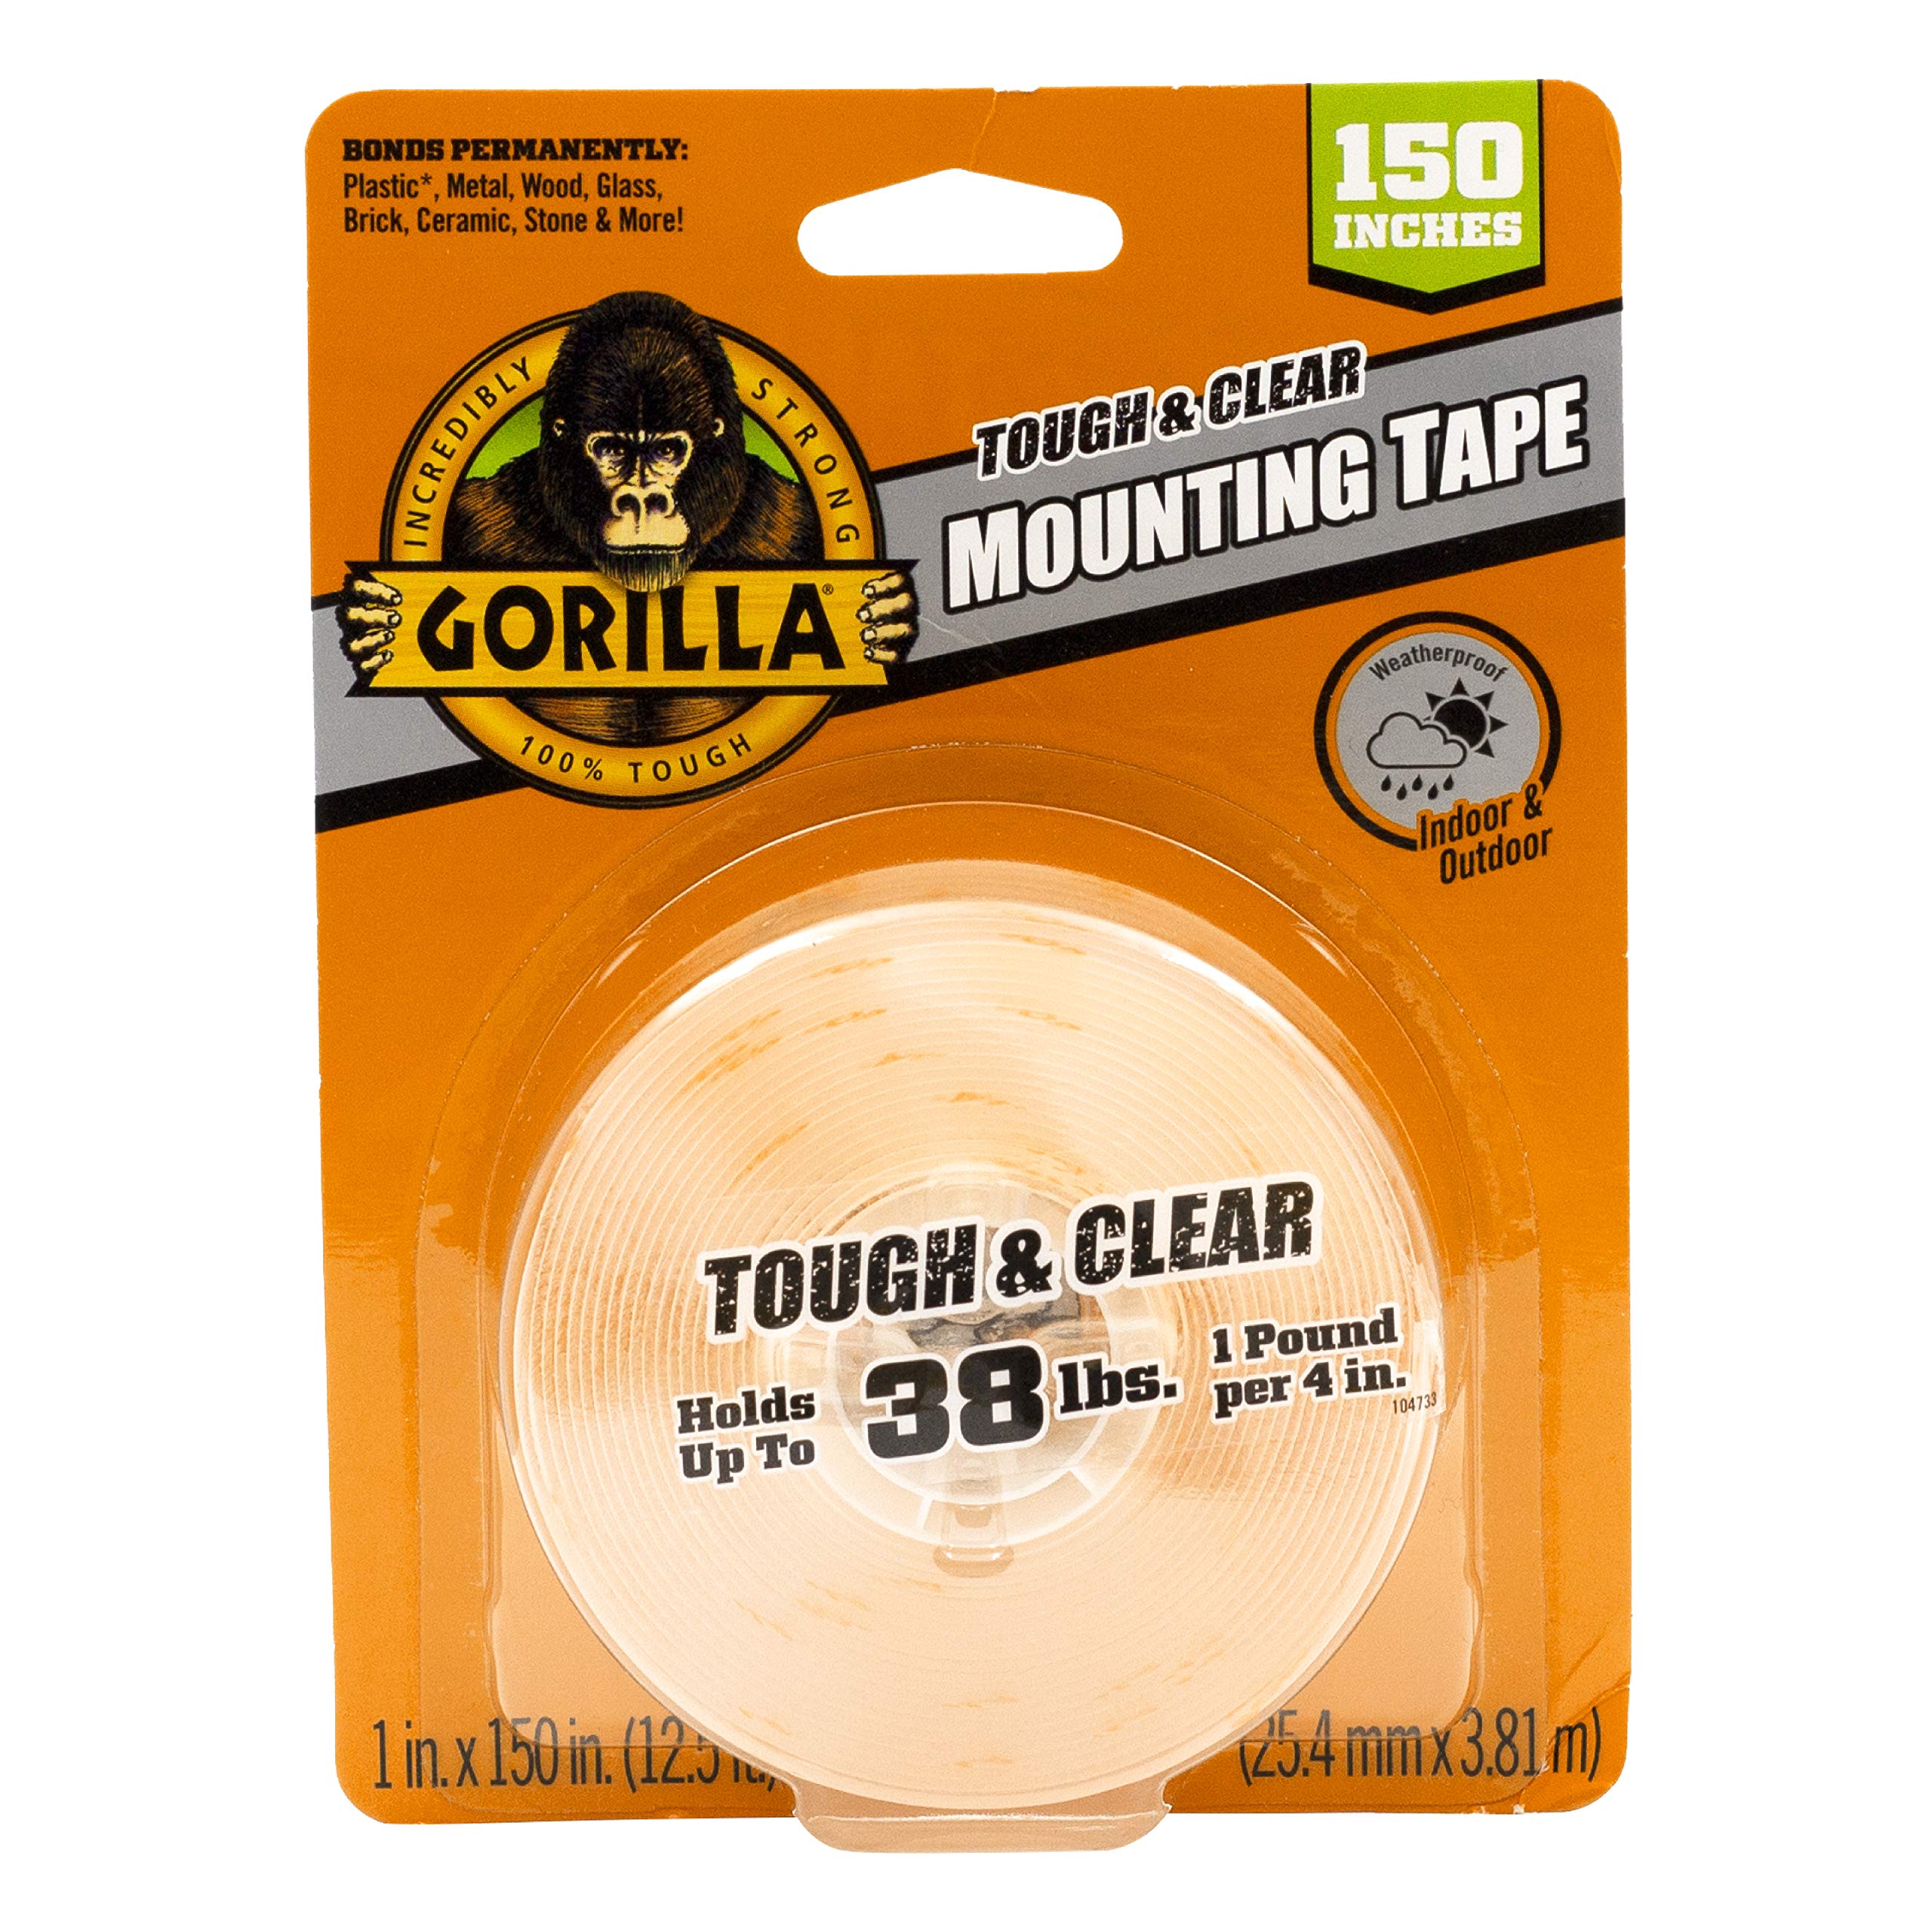 Gorilla सख्त और साफ़ डबल साइडेड XL माउंटिंग टेप